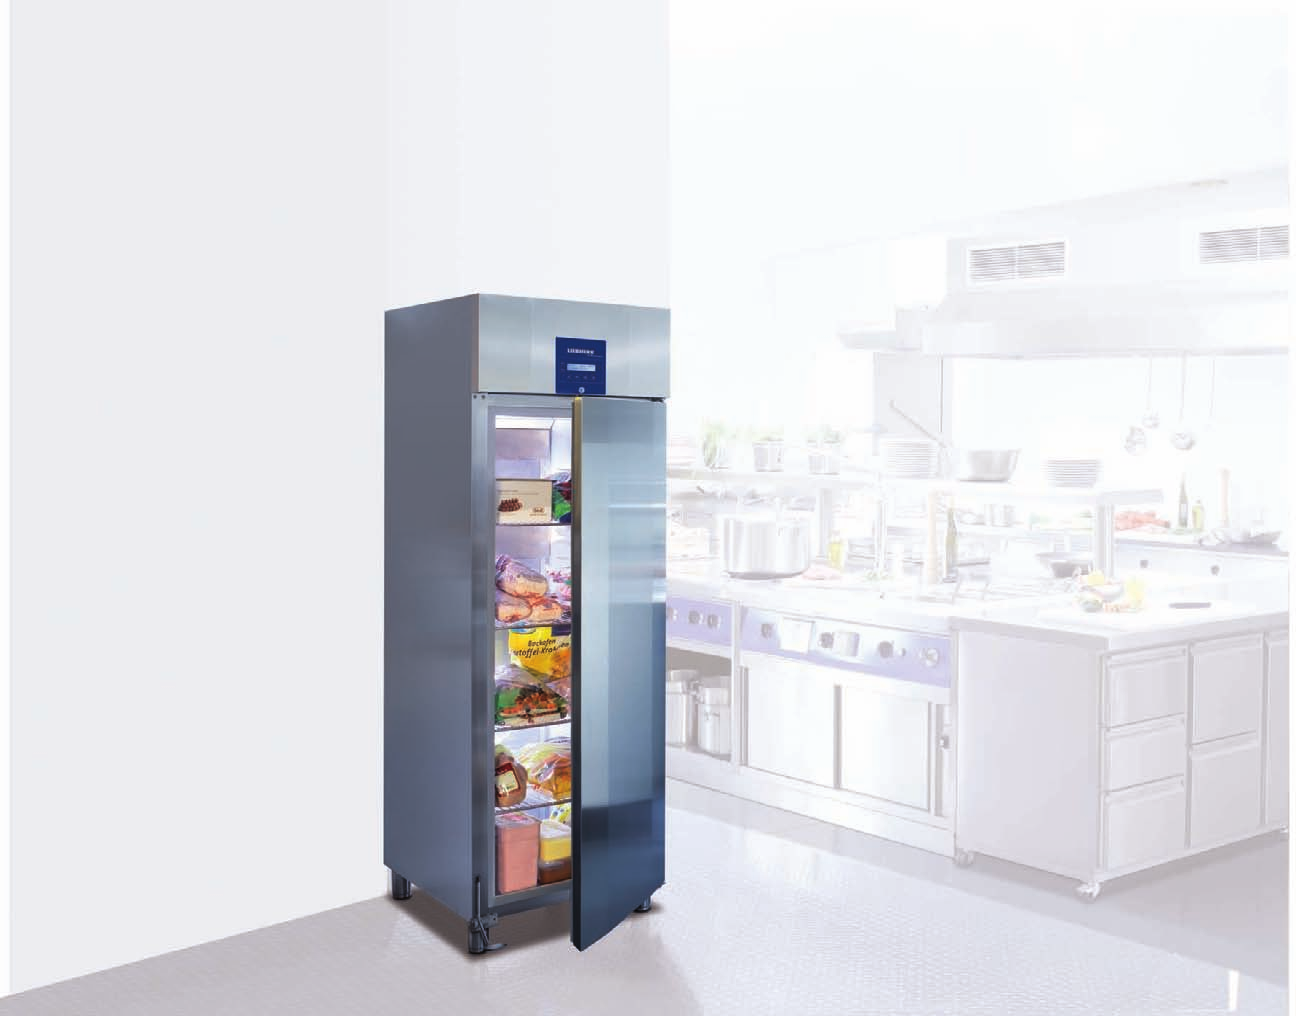 Idee fresche per l ambiente In tutti i settori nei quali la freschezza gioca un ruolo fondamentale, i frigoriferi e congelatori devono soddisfare requisiti particolarmente elevati.